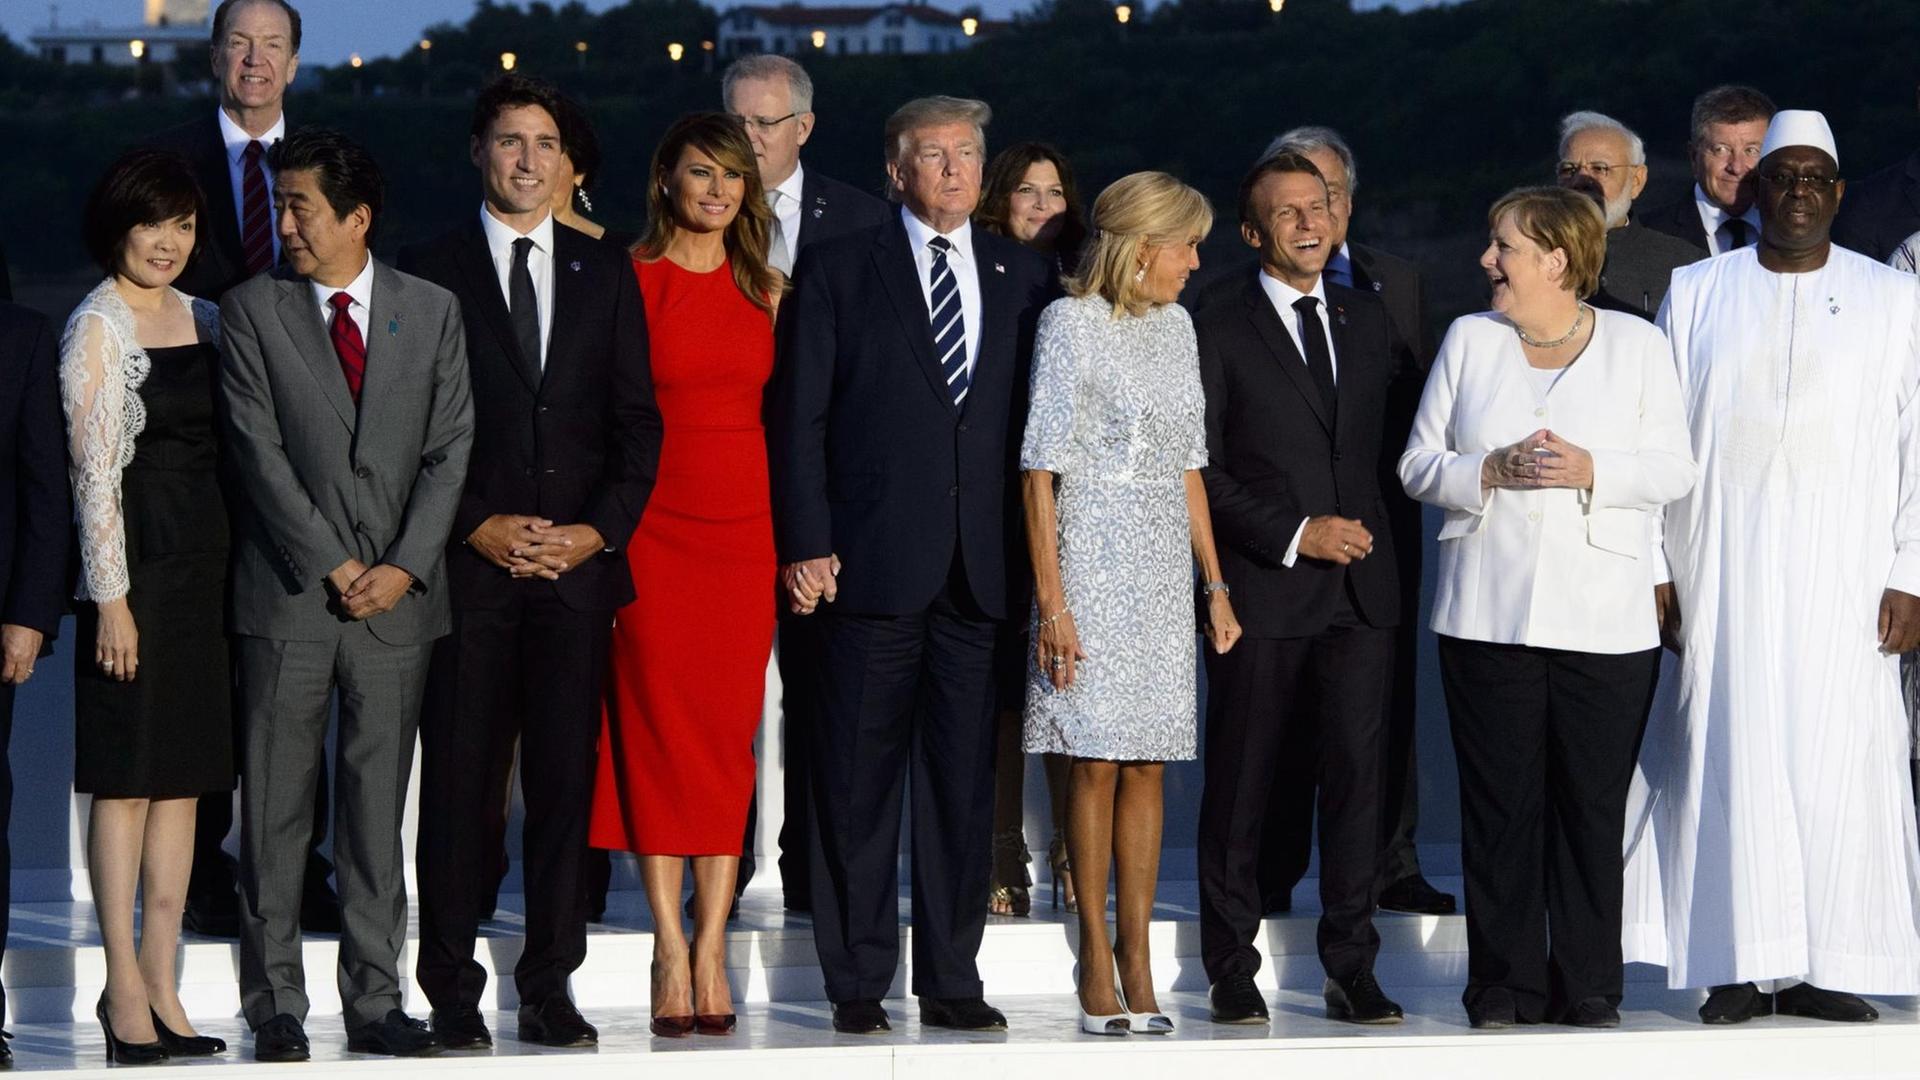 Gruppenfoto in Biarritz: Alle außer Trump lachen.